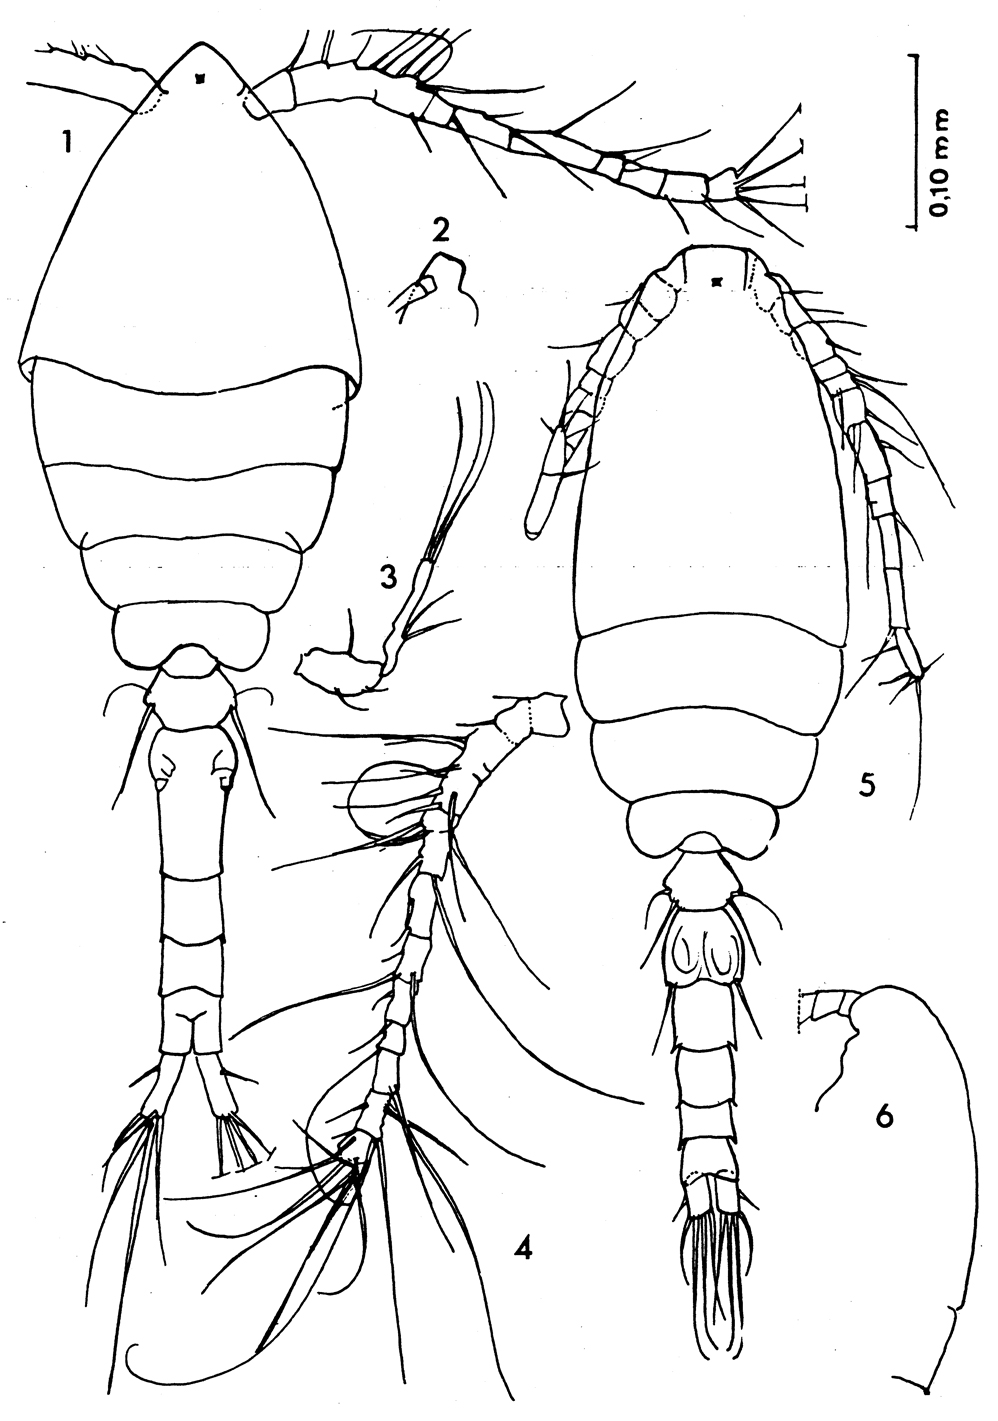 Espèce Oithona oswaldocruzi - Planche 2 de figures morphologiques